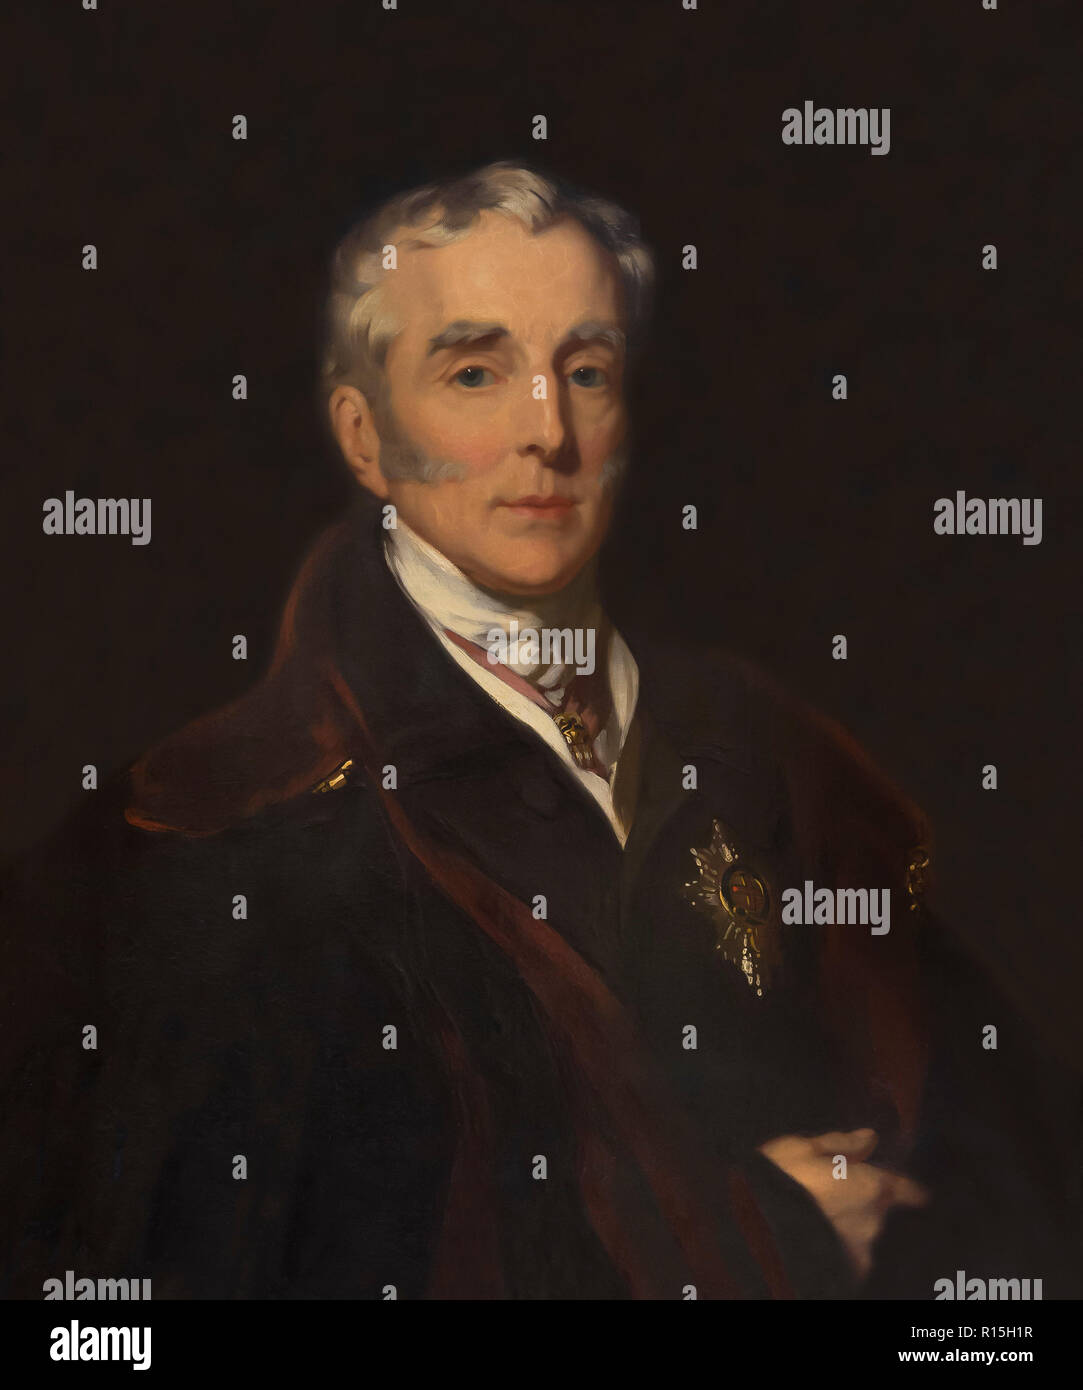 Duc de Wellington, Portrait, John Lucas, 1839, levier Dame Art Gallery, Port Sunlight, Liverpool, Angleterre, Royaume-Uni, Europe Banque D'Images